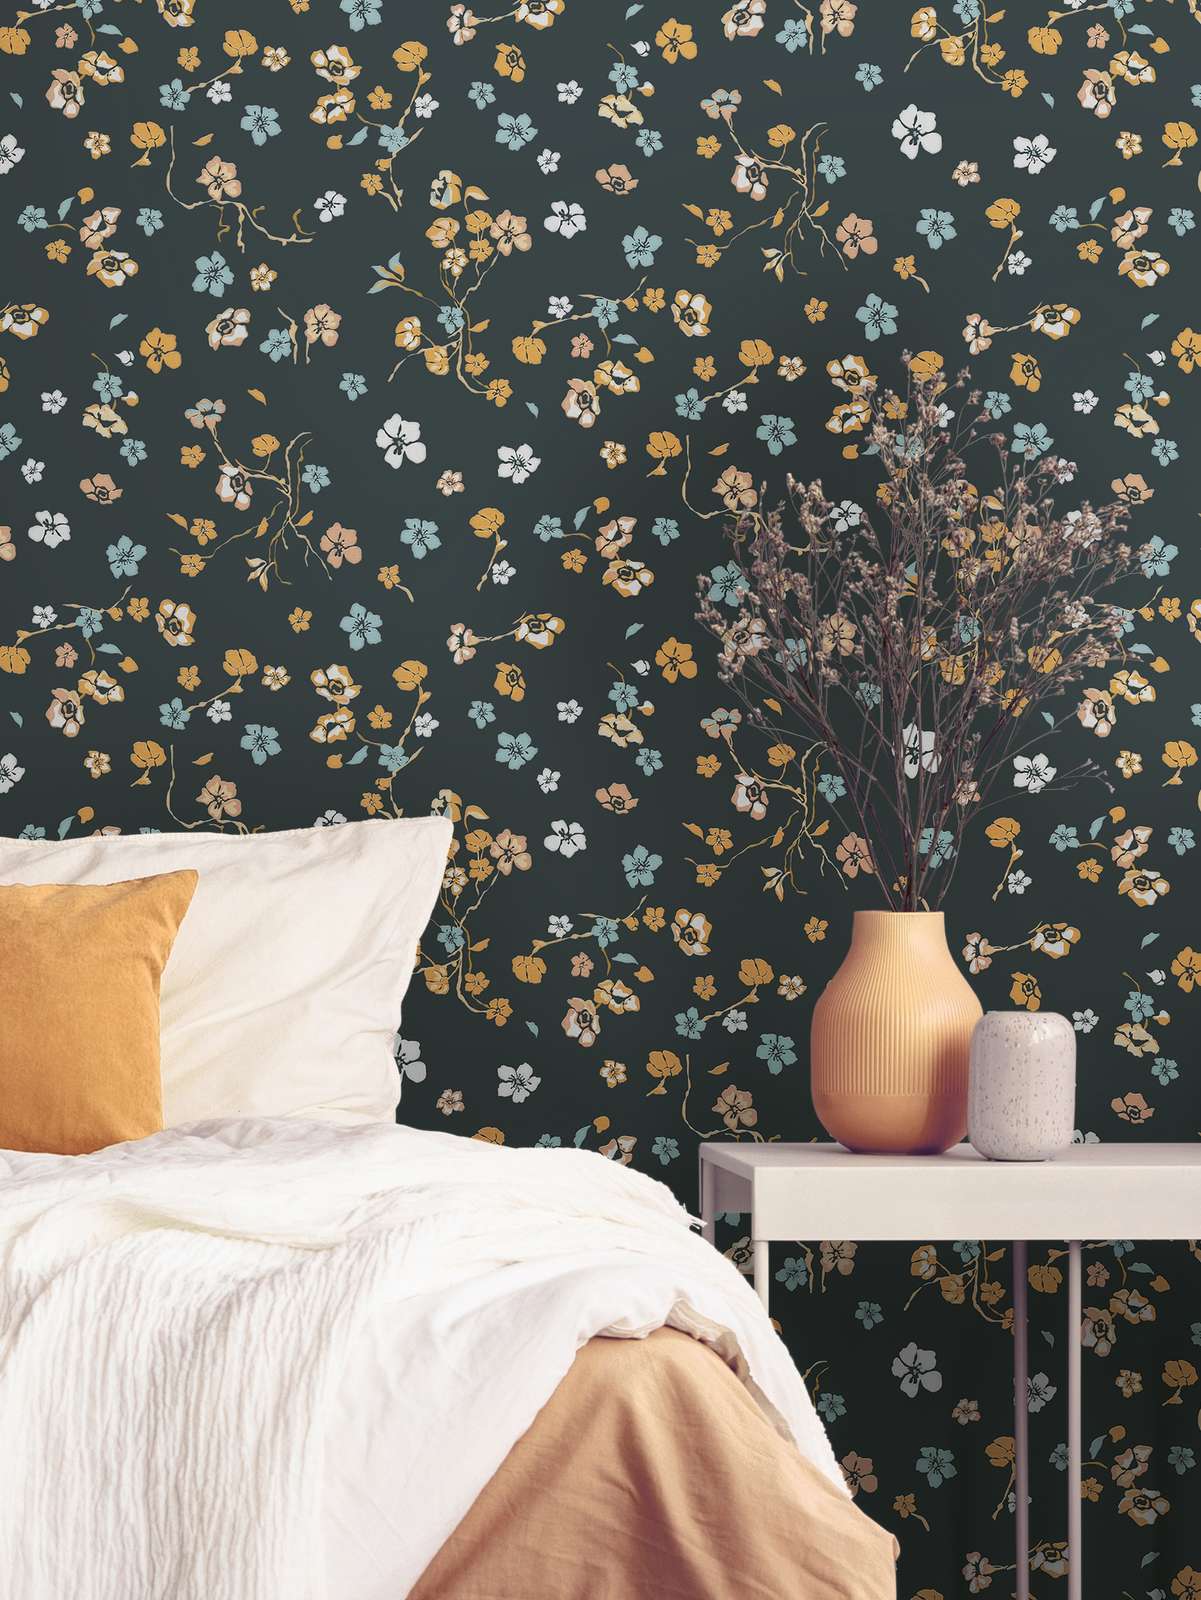             Papel pintado floral con efecto brillante y patrón texturizado - negro, dorado, turquesa
        